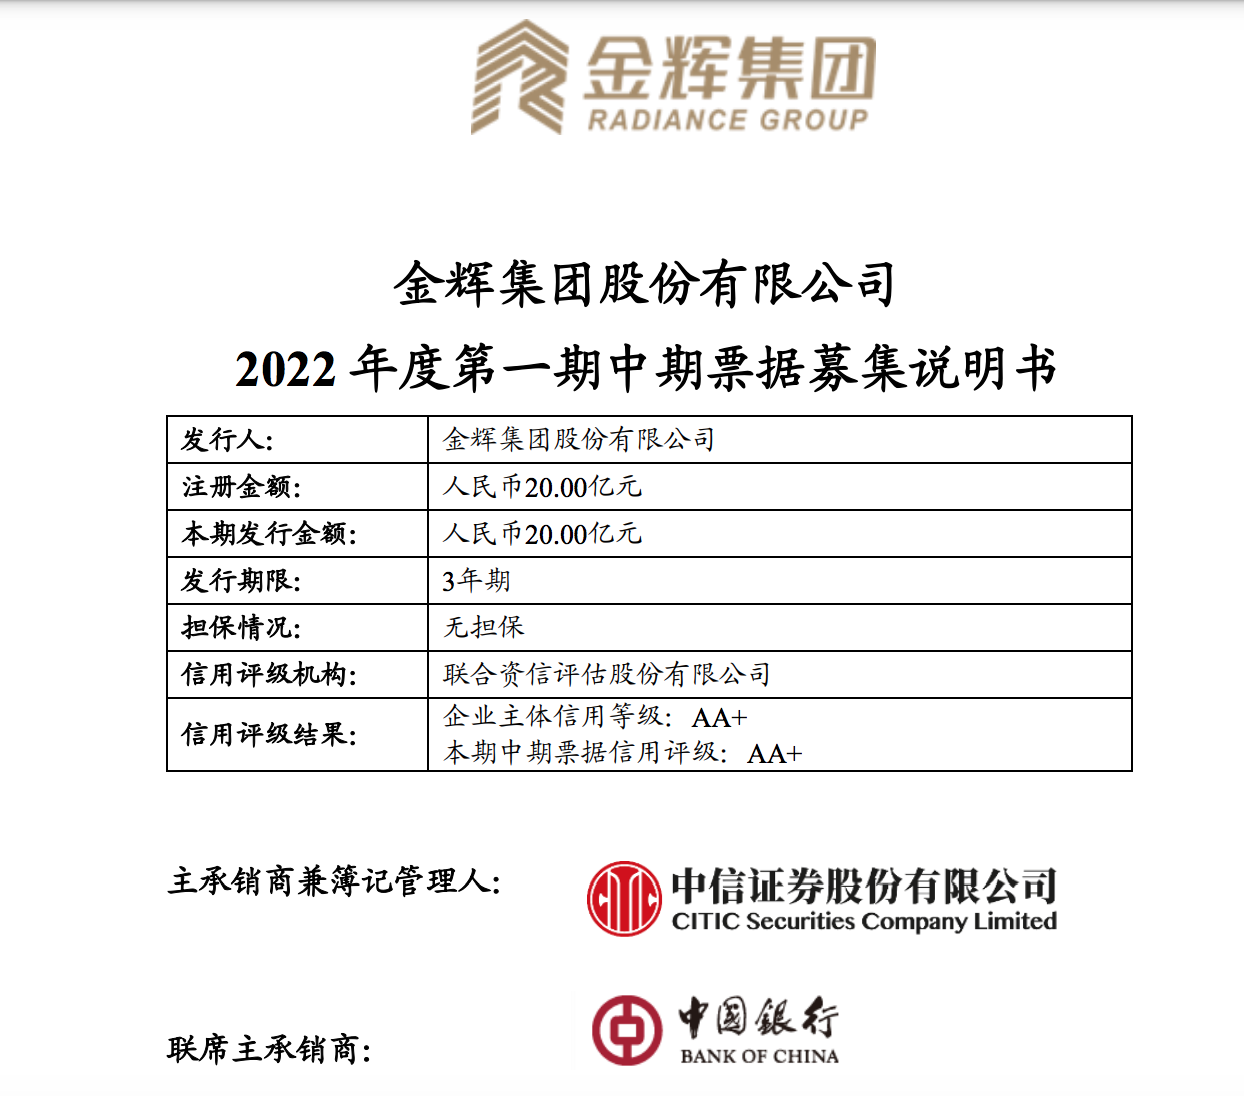 金辉集团注册发行20亿元中票：用于项目建设、购回及偿还债务